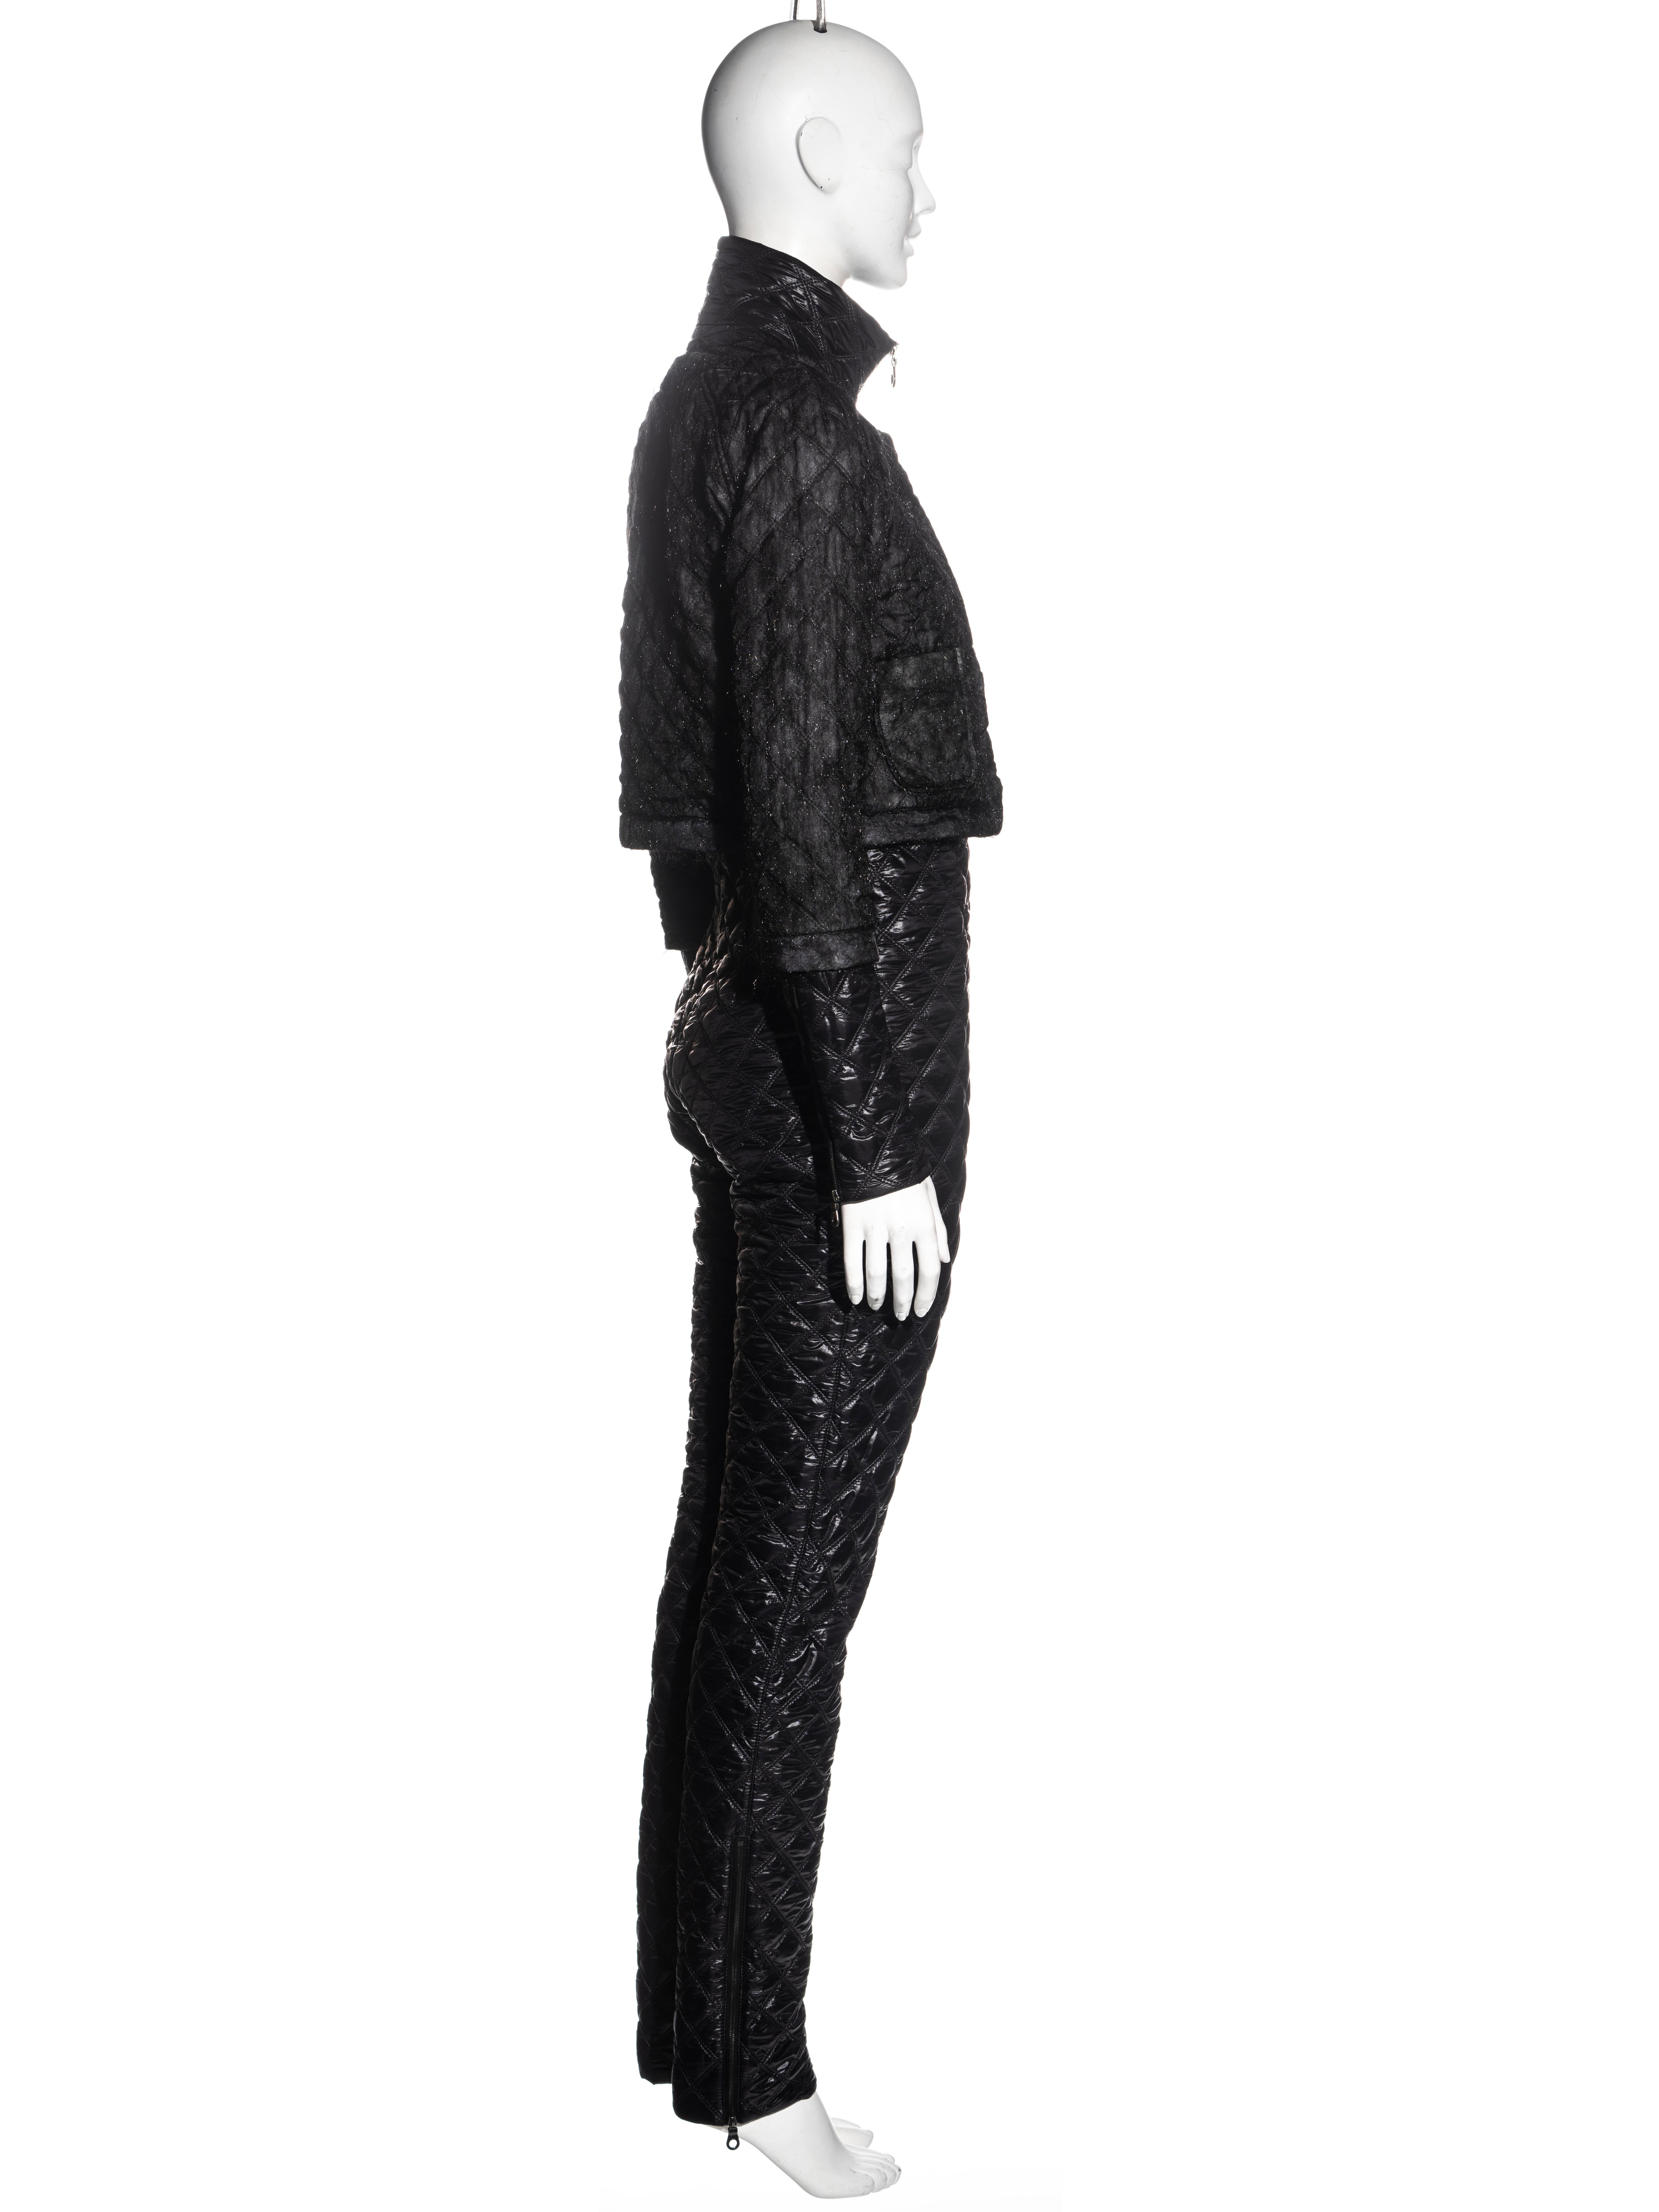 Combinaison en nylon matelassé noir Chanel par Karl Lagerfeld, automne-hiver 2011 Pour femmes en vente